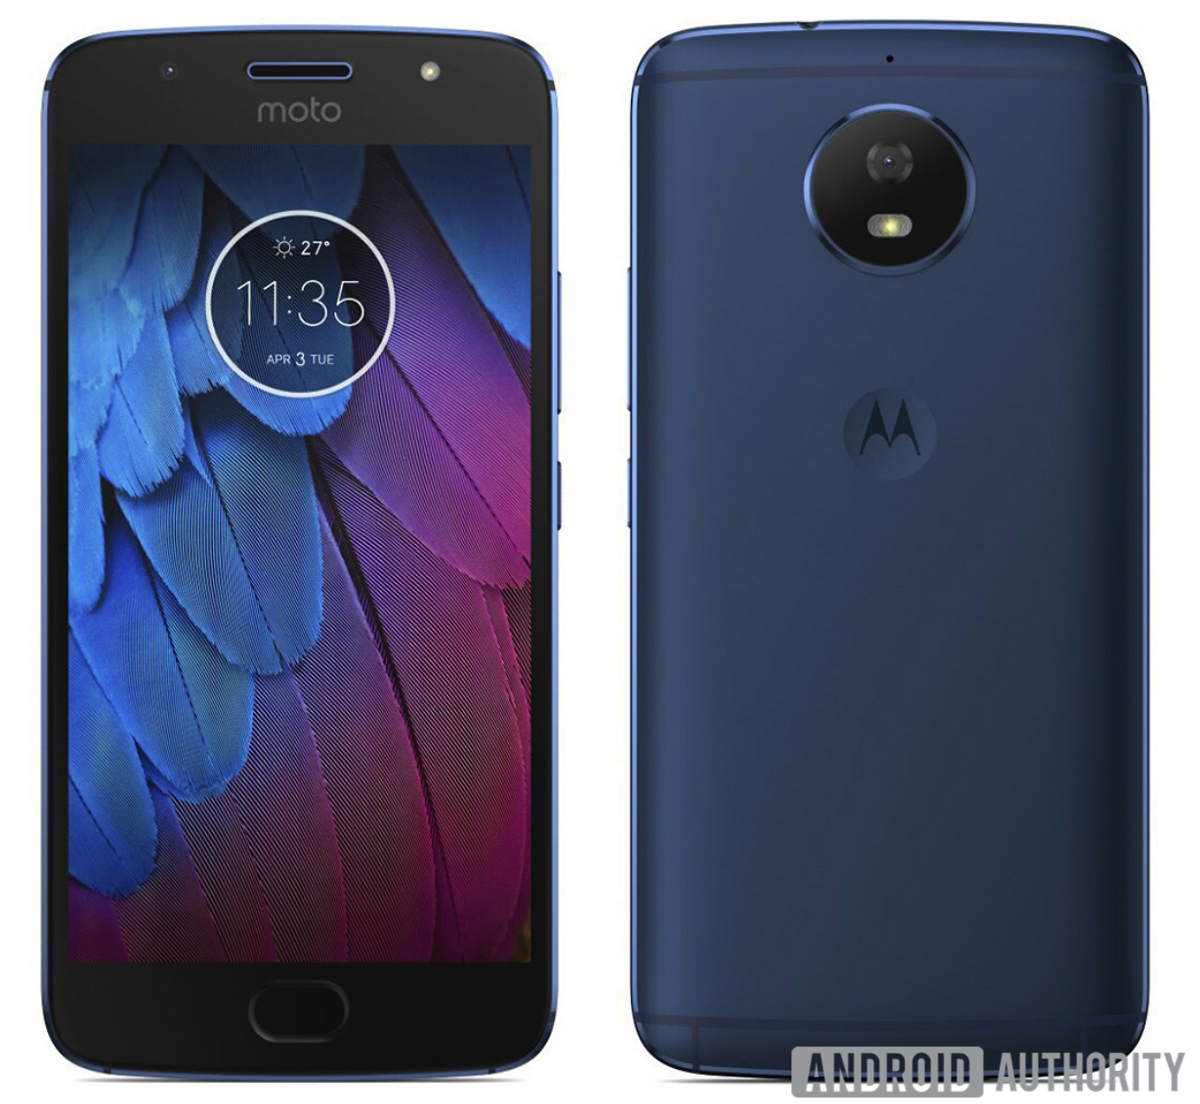 Motorola-Moto-G5S-renders-3.jpg